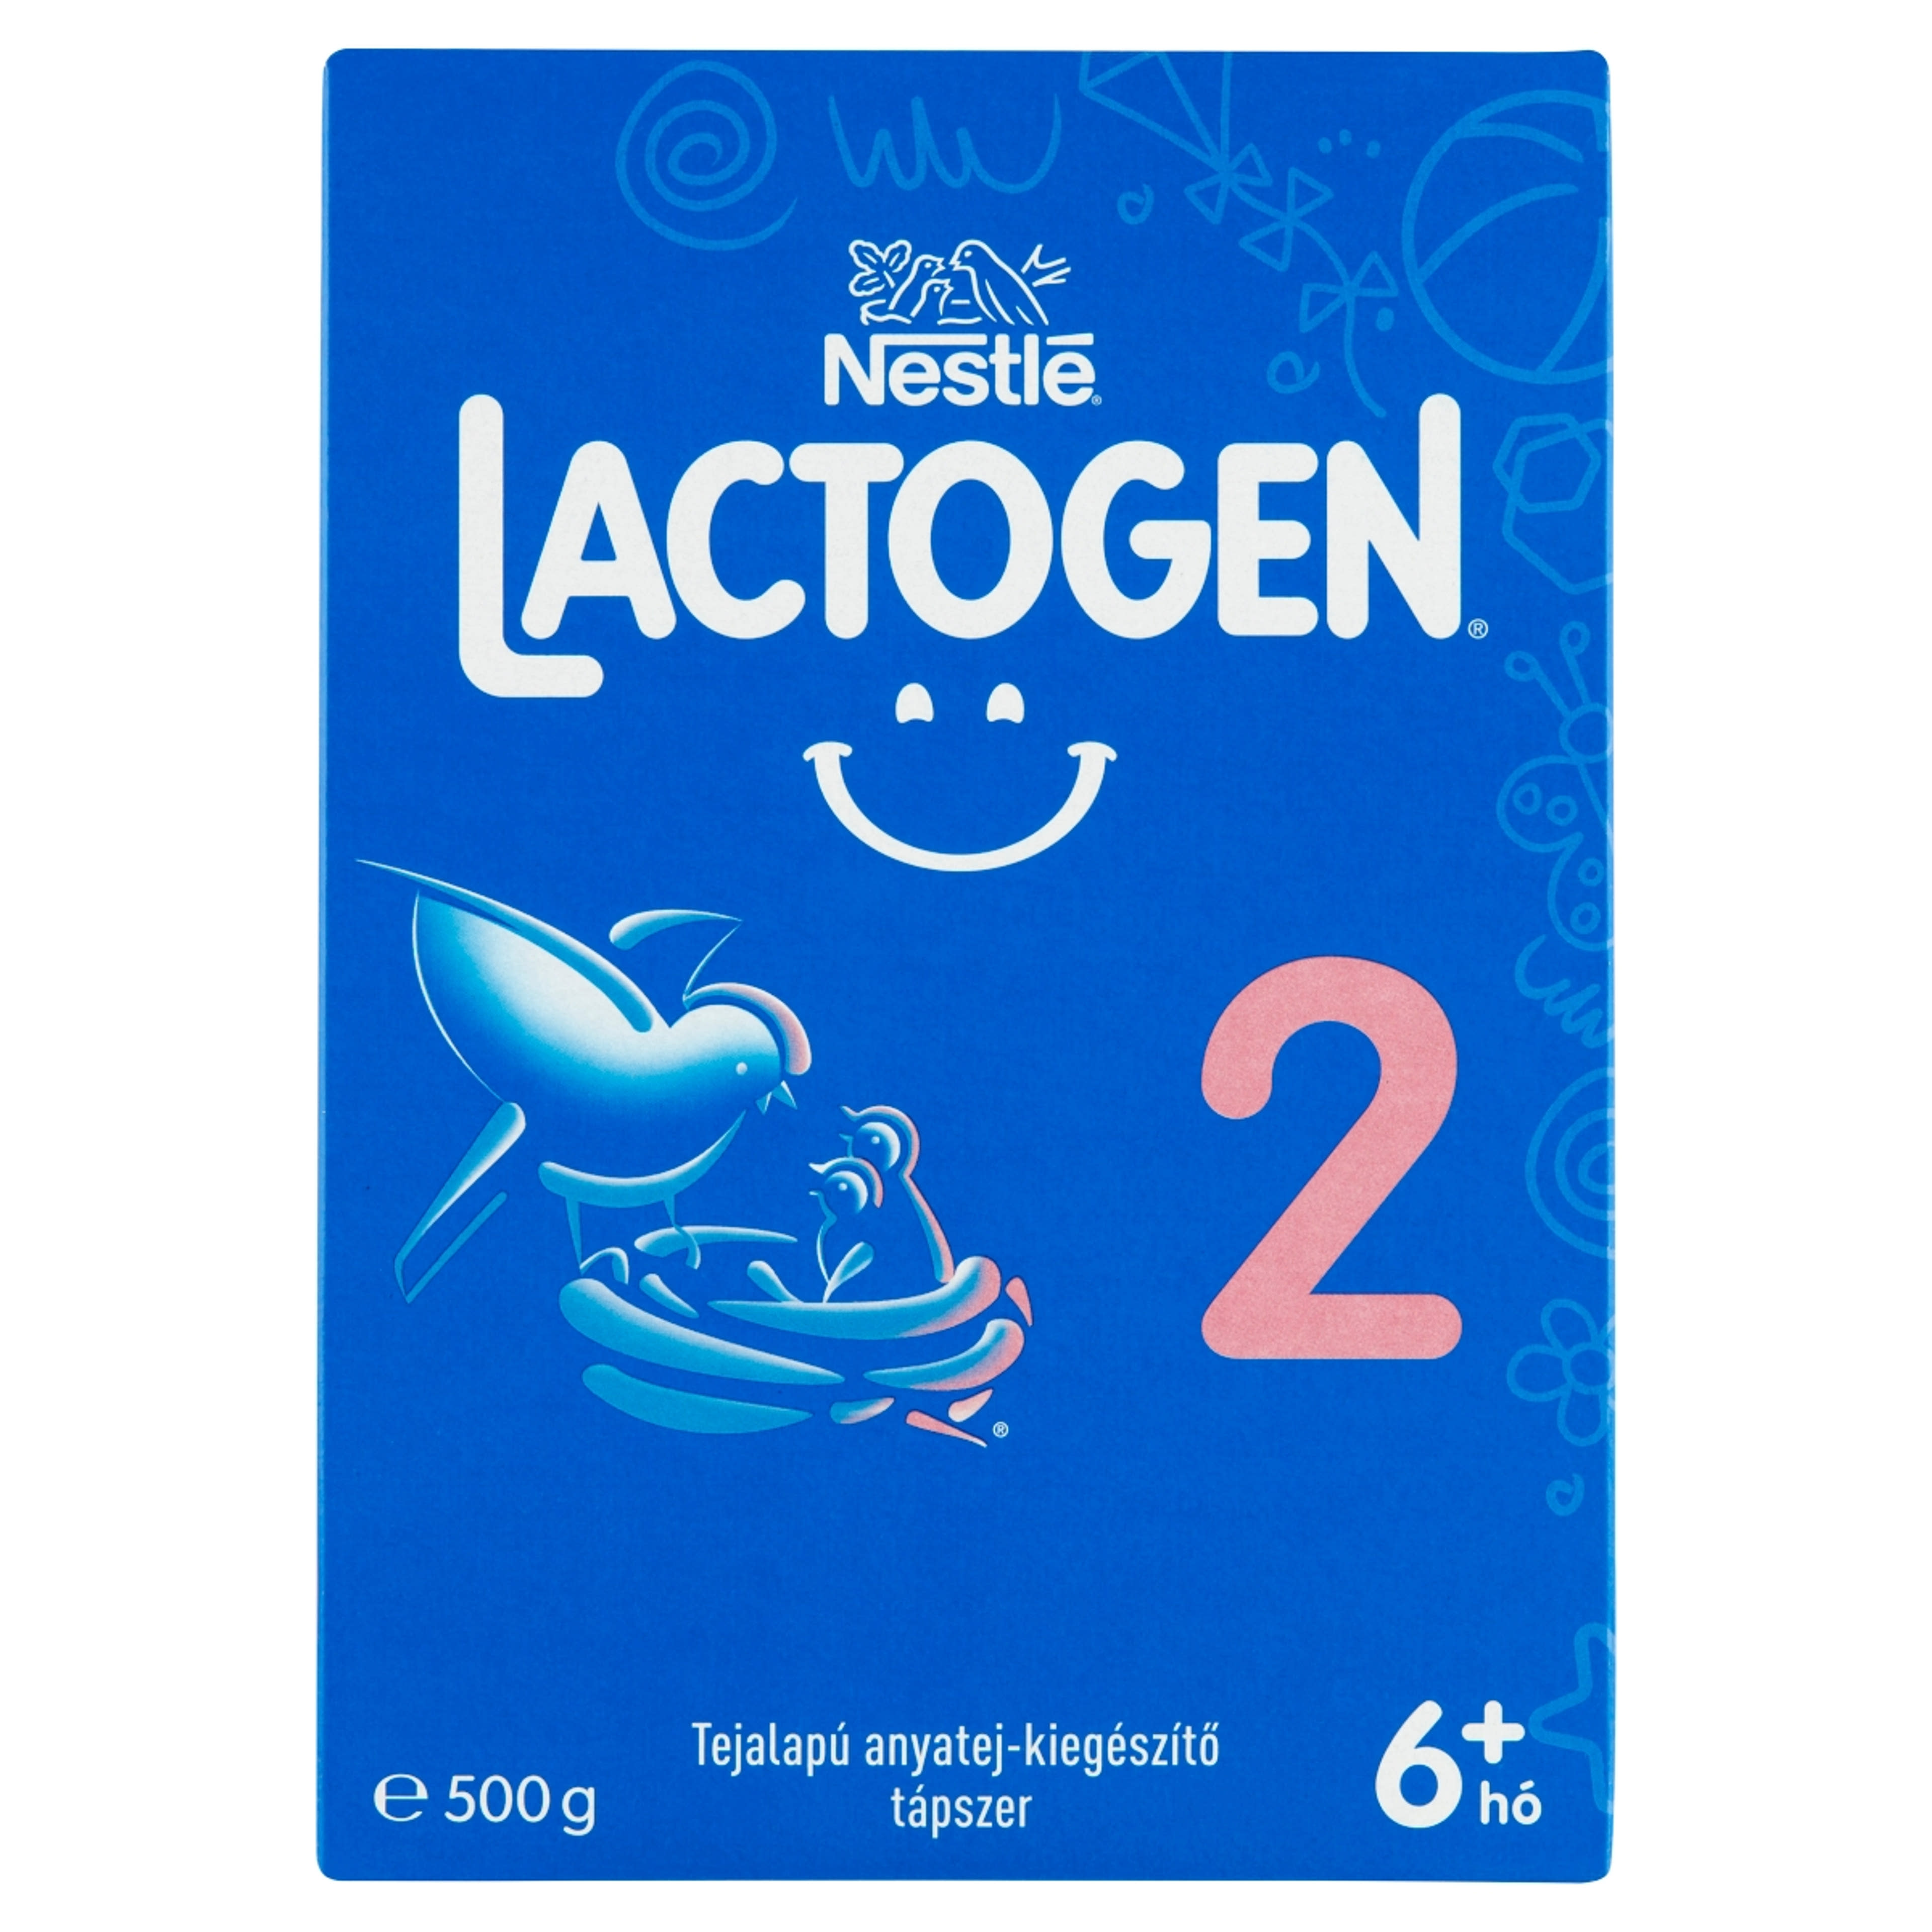 Nestlé Lactogen 2 tejalapú anyatej-kiegészítő tápszer 6+ hónapos kortól - 500 g